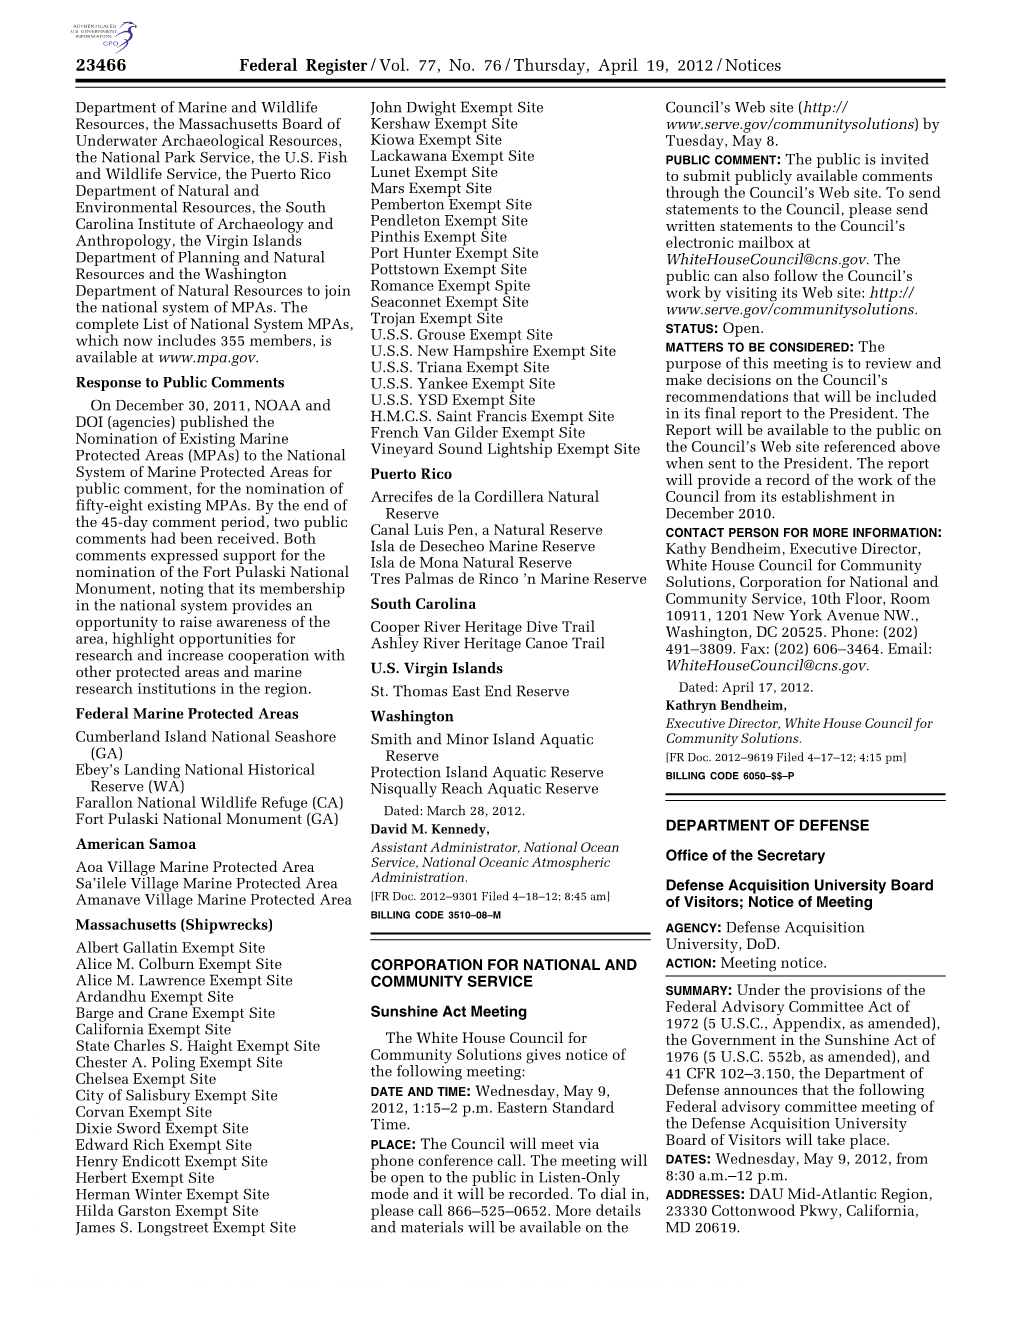 Federal Register/Vol. 77, No. 76/Thursday, April 19, 2012/Notices